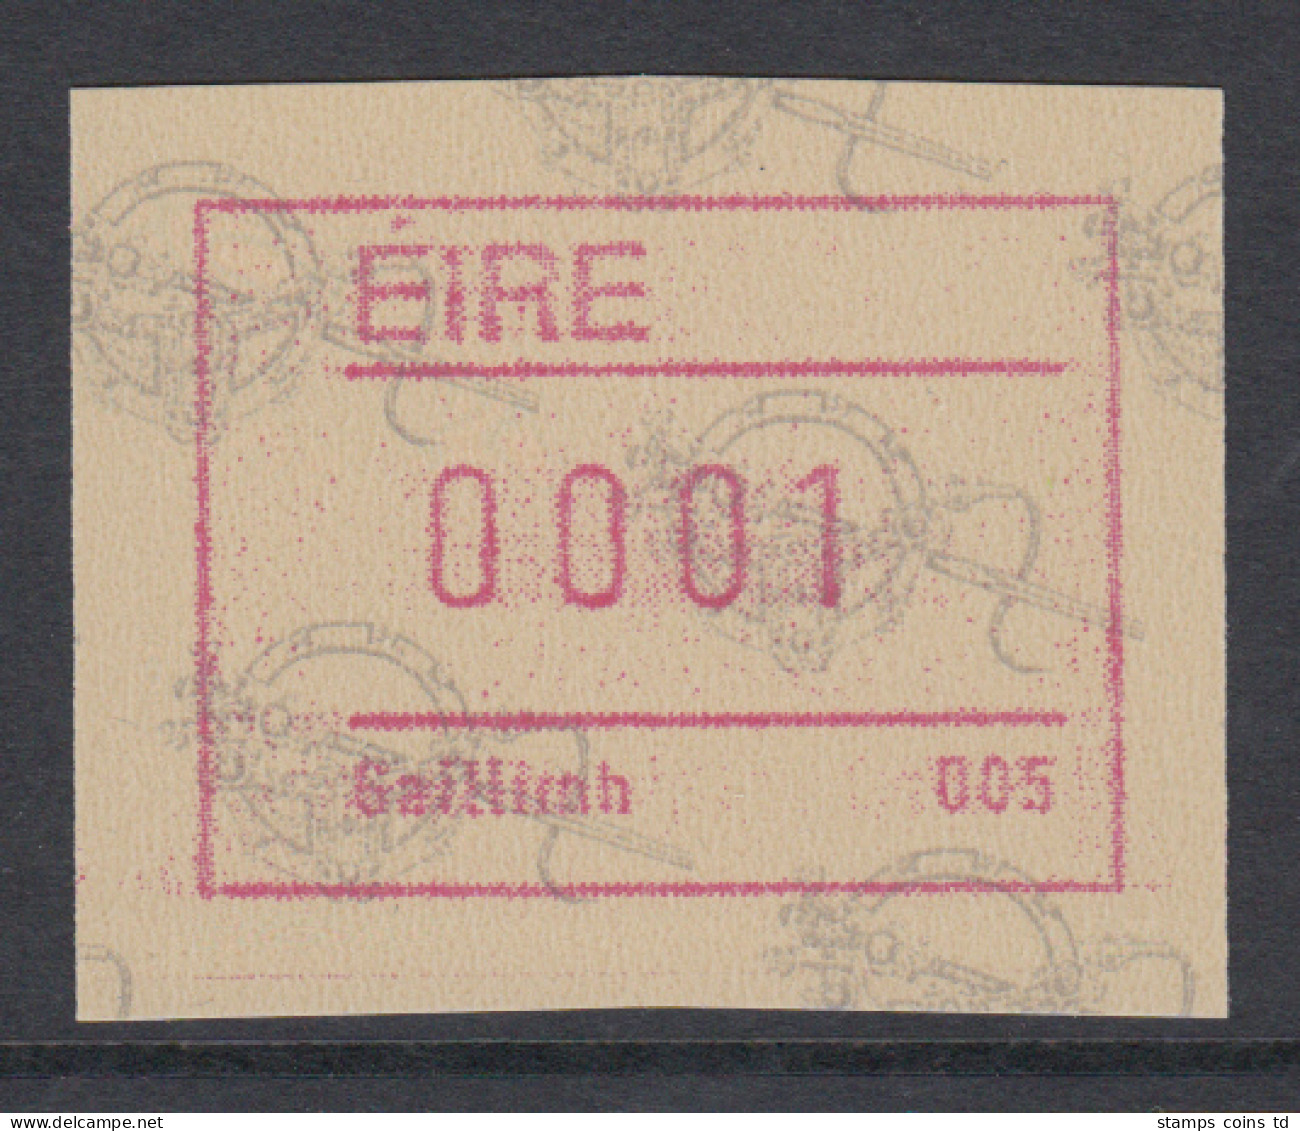 Irland Frama-ATM  2.Ausgabe 1992 Tara-Brosche,  Mi.-Nr. 4 **  - Automatenmarken (Frama)